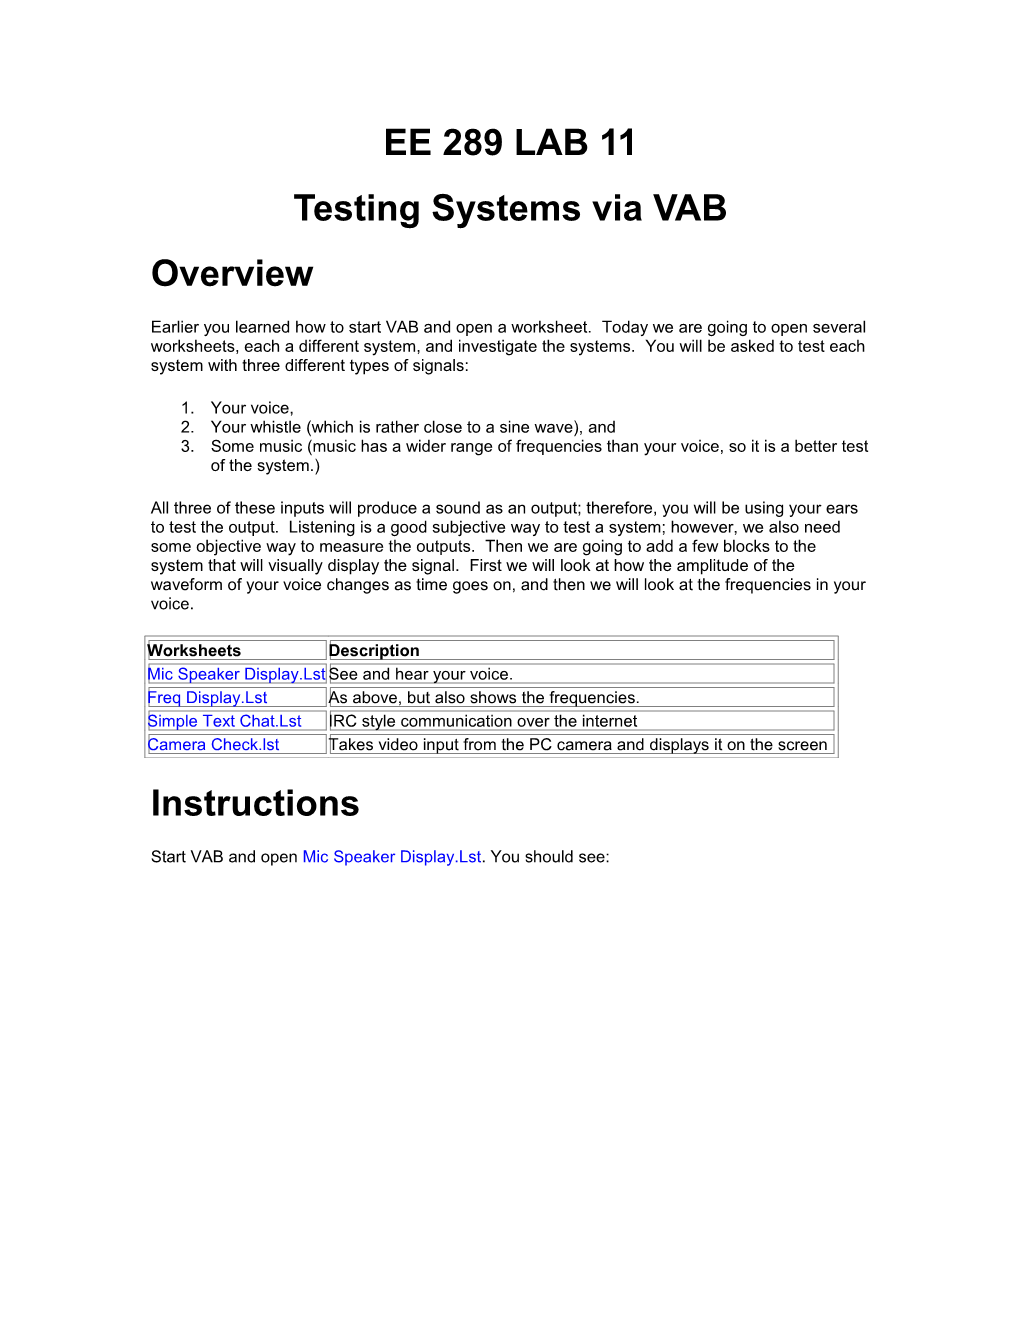 Testing Systems Via VAB